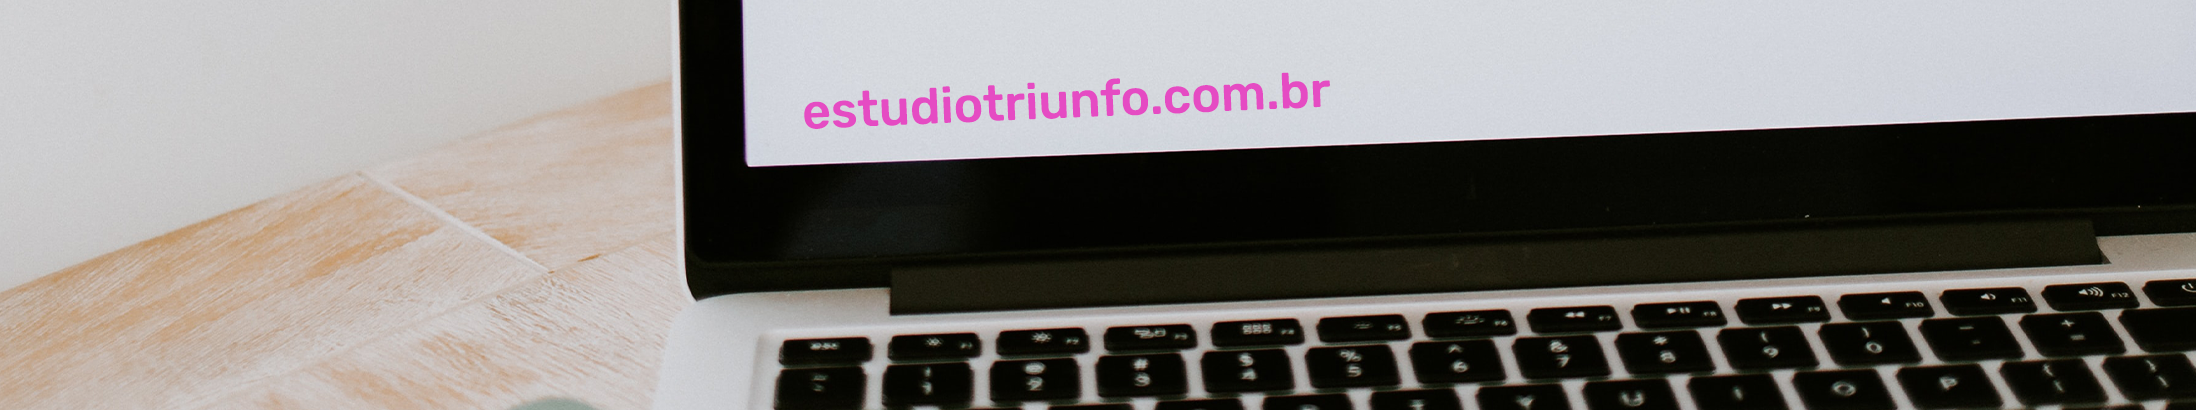 Triunfo Estudio Digital のプロファイルバナー